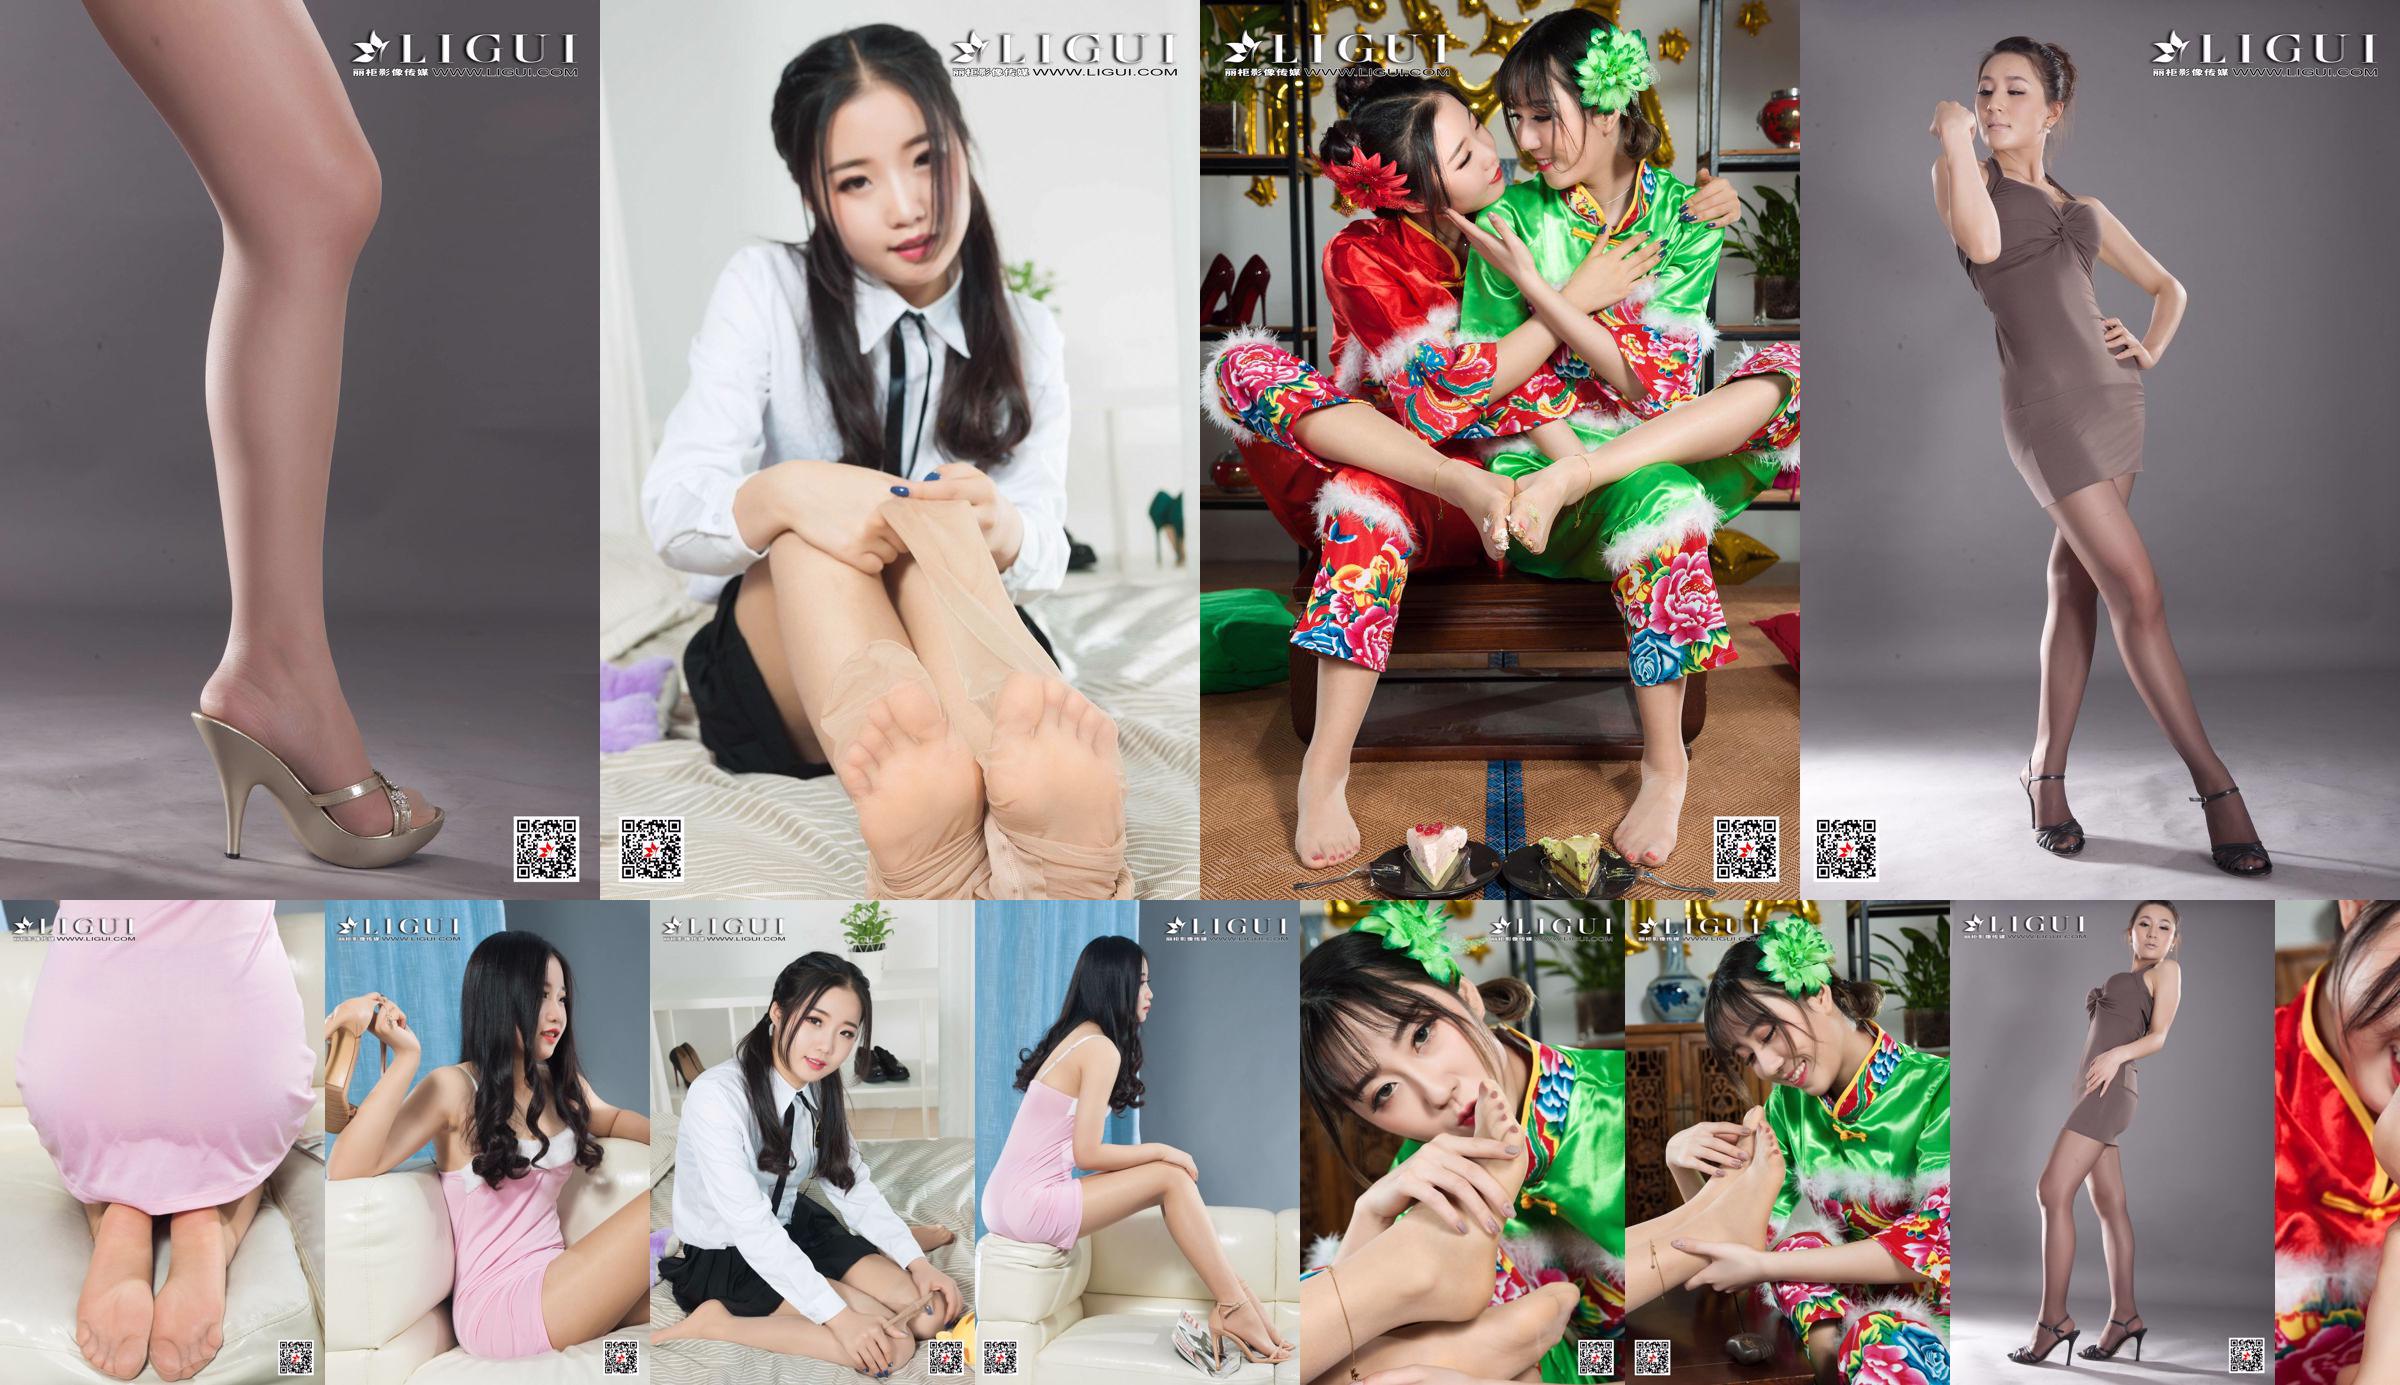 [丽 柜 Ligui] Model Yuanyuan "Studio Shot Beauty" No.c846fd Pagina 1